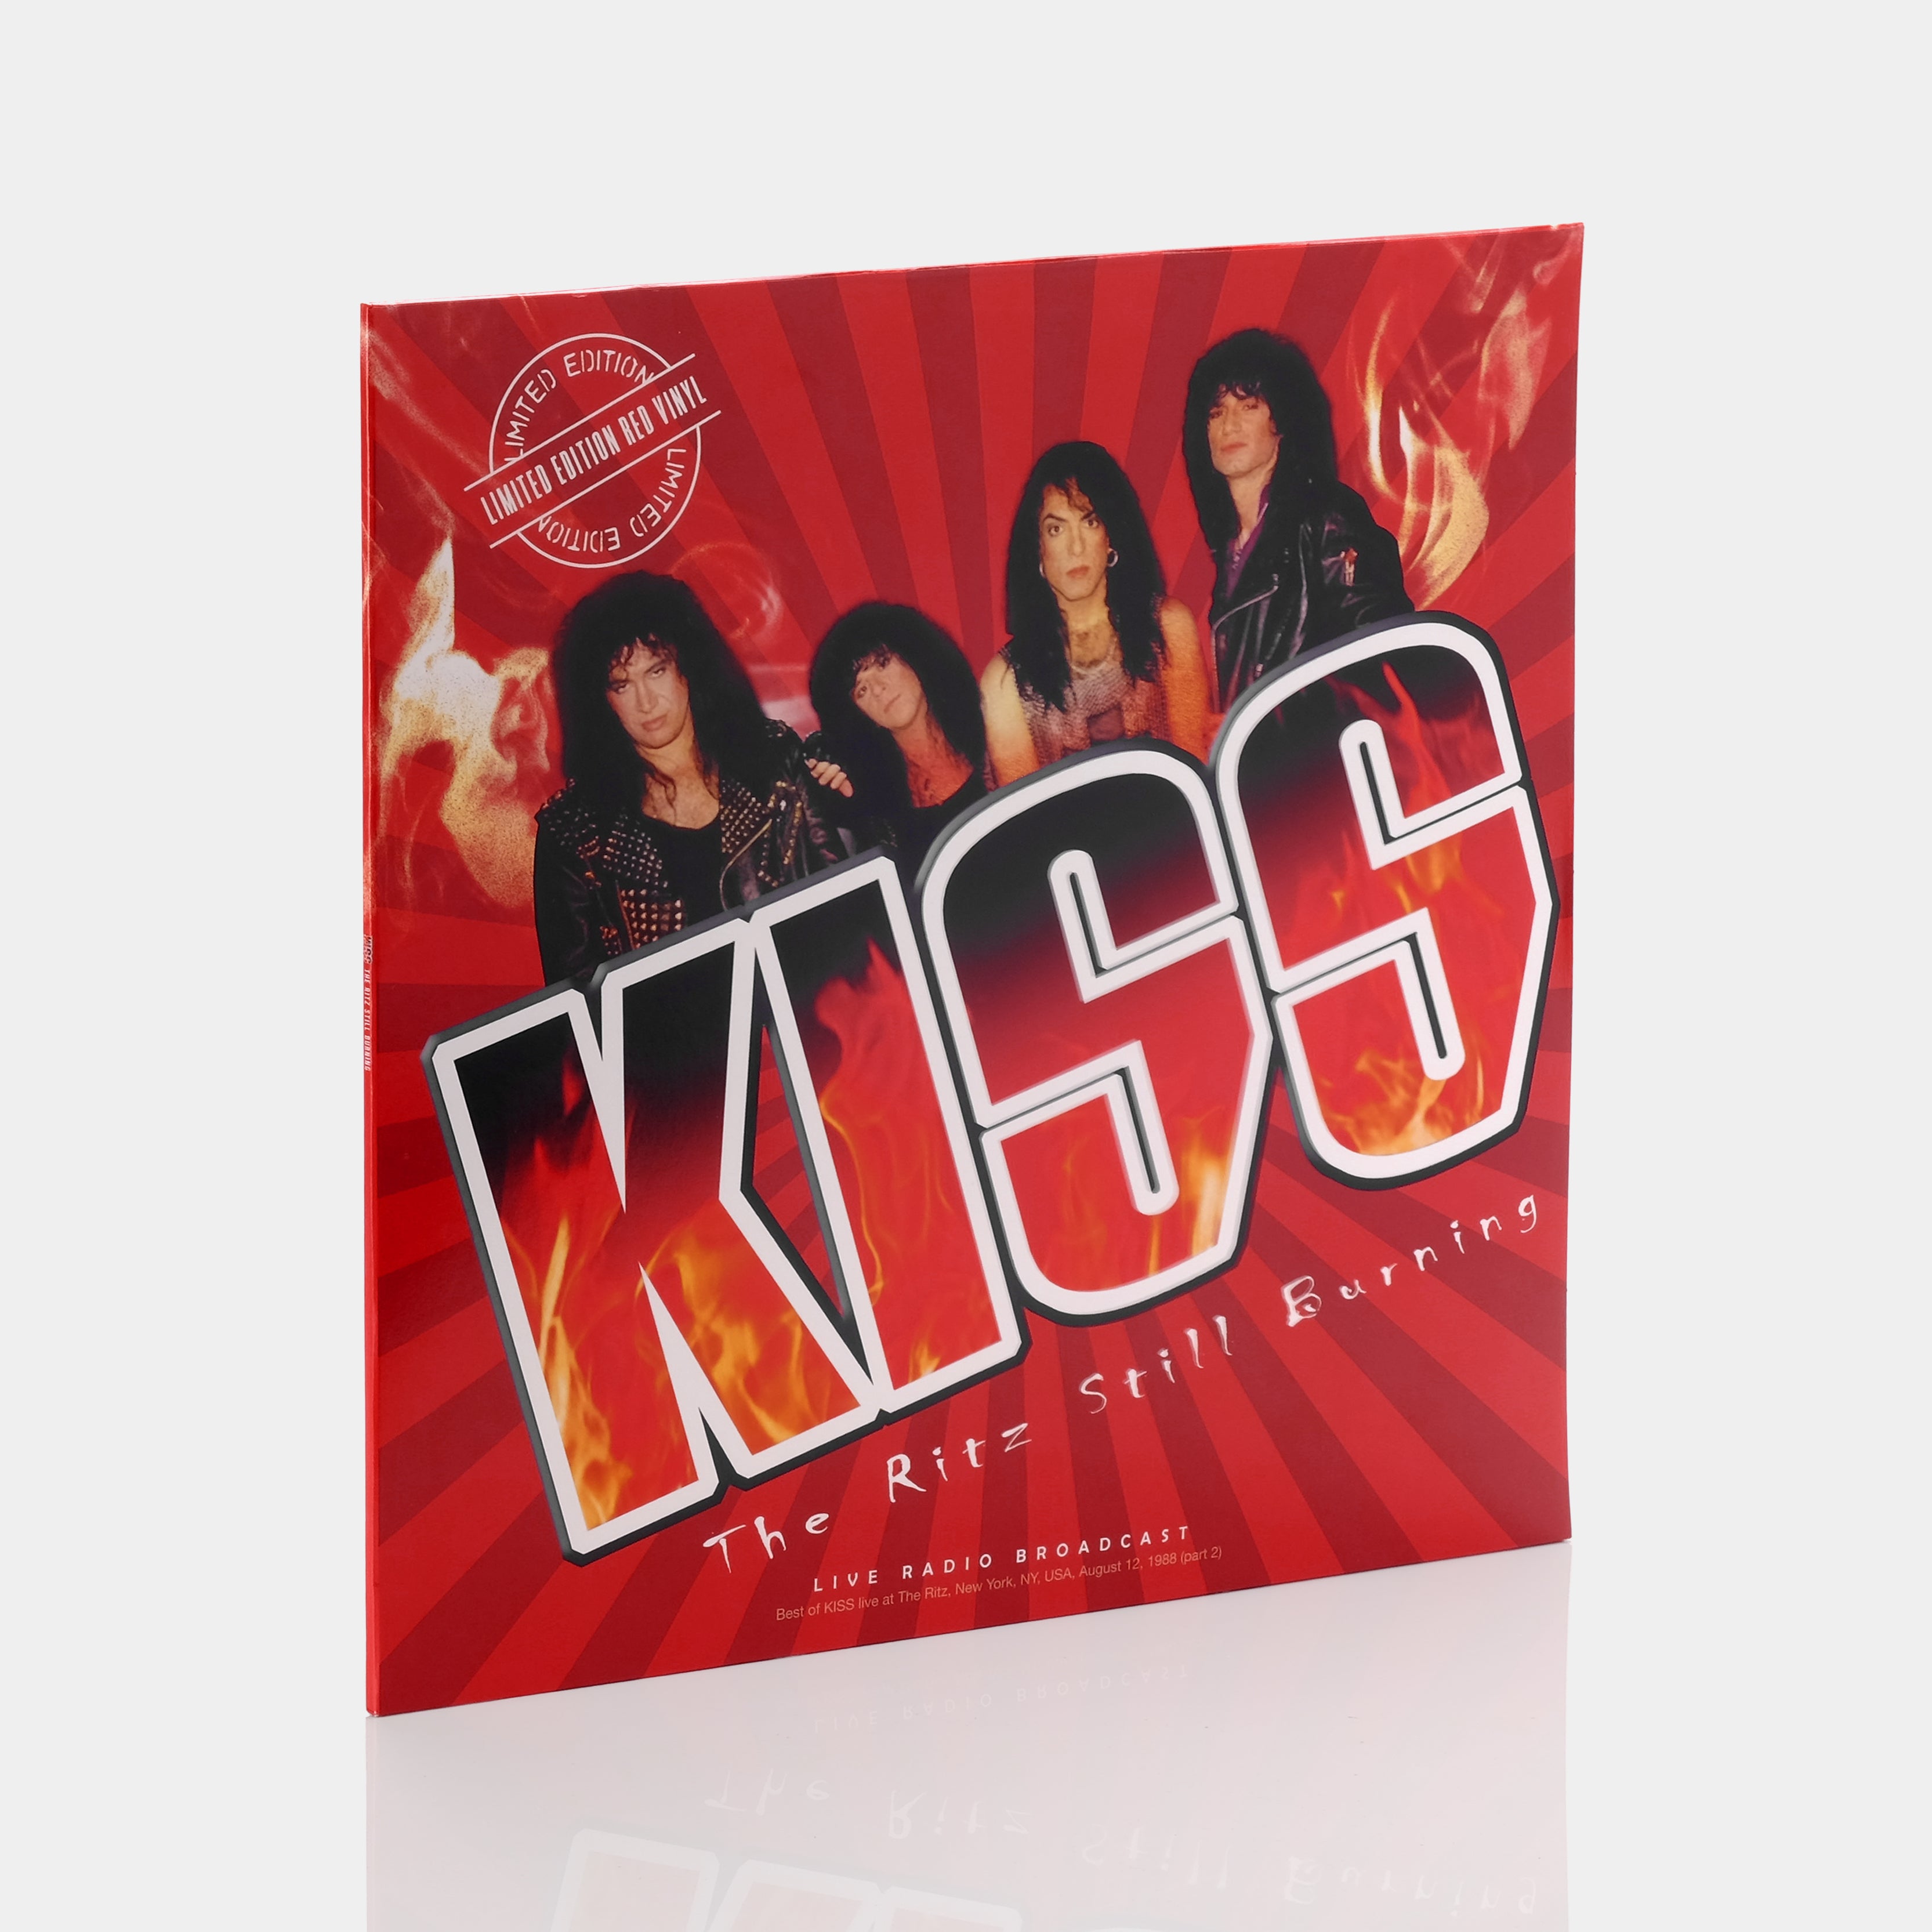 KISS - The Ritz Still Burning LP Red Vinyl Record